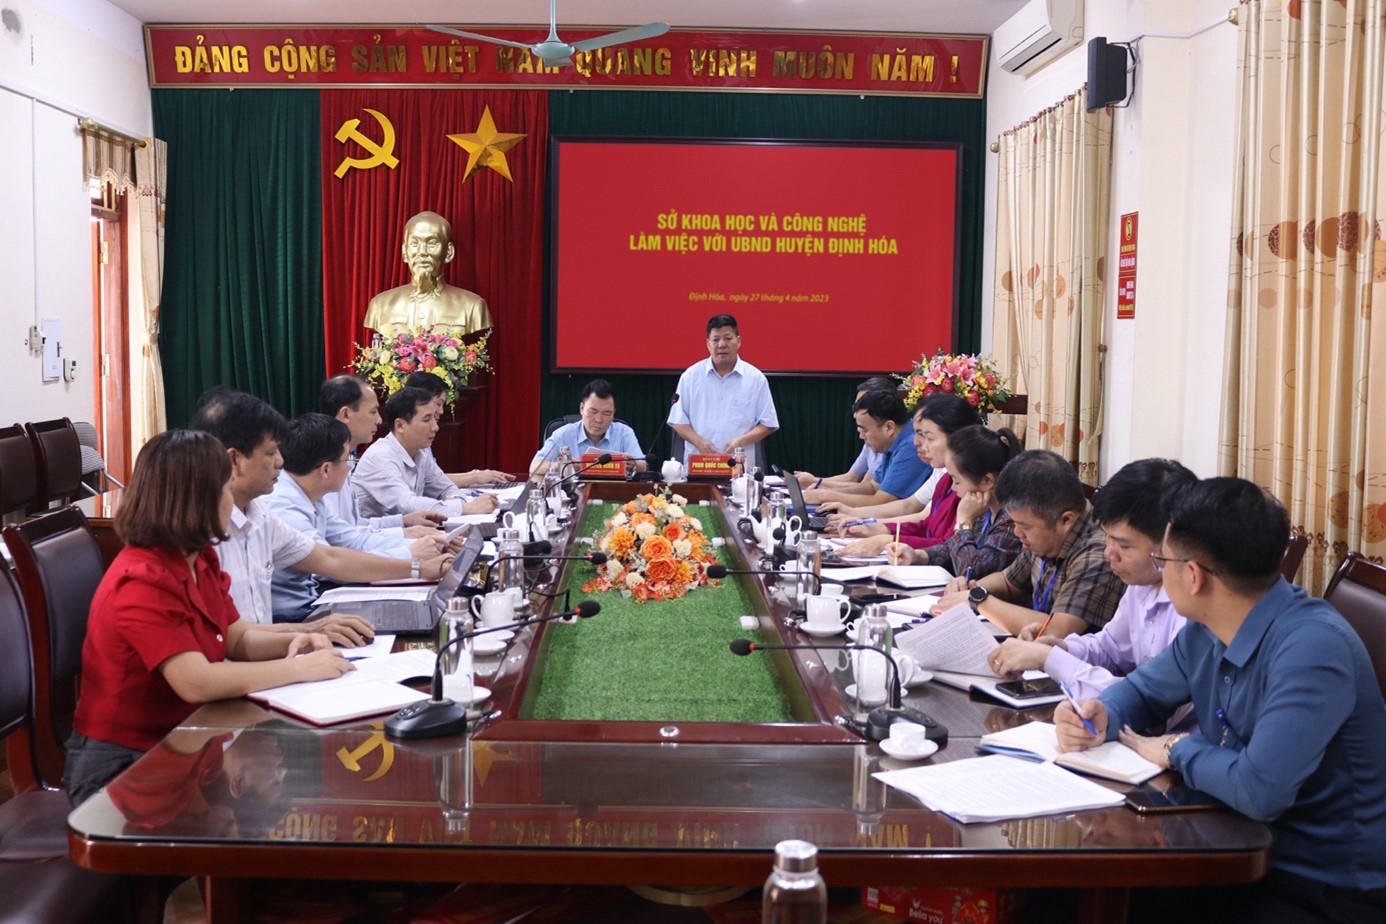 Sở KH&CN làm việc với huyện Định Hóa